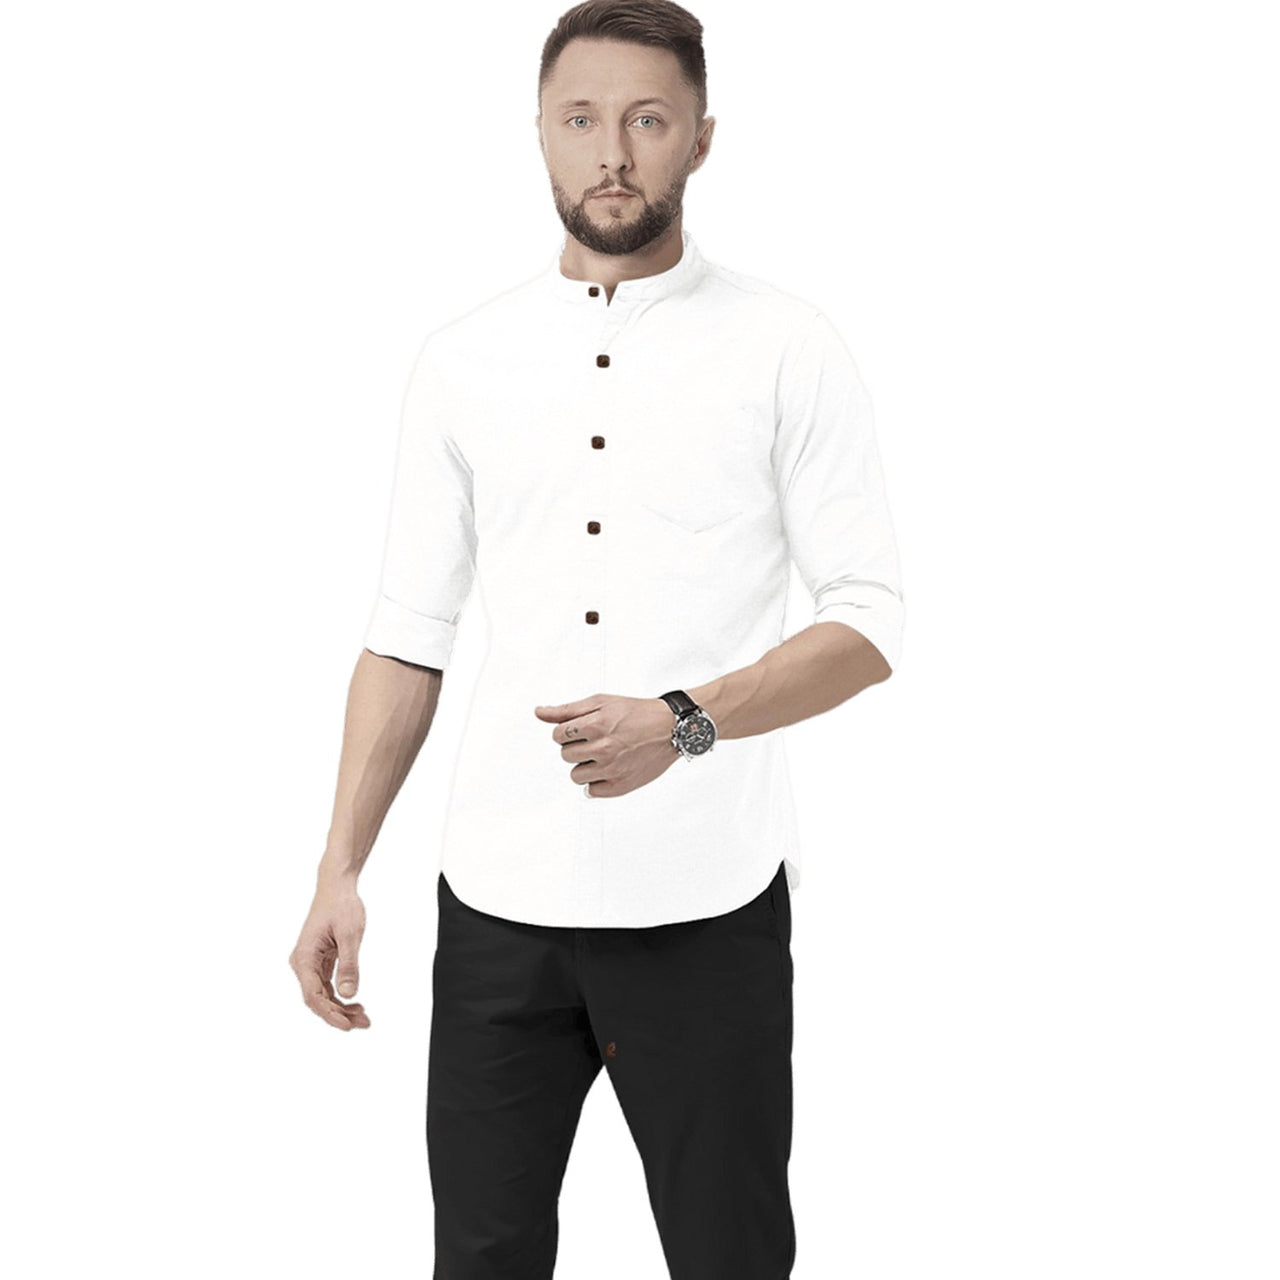 Hemploom - Classic Hemp & Cotton Shirt in Solid White - CBD Store India